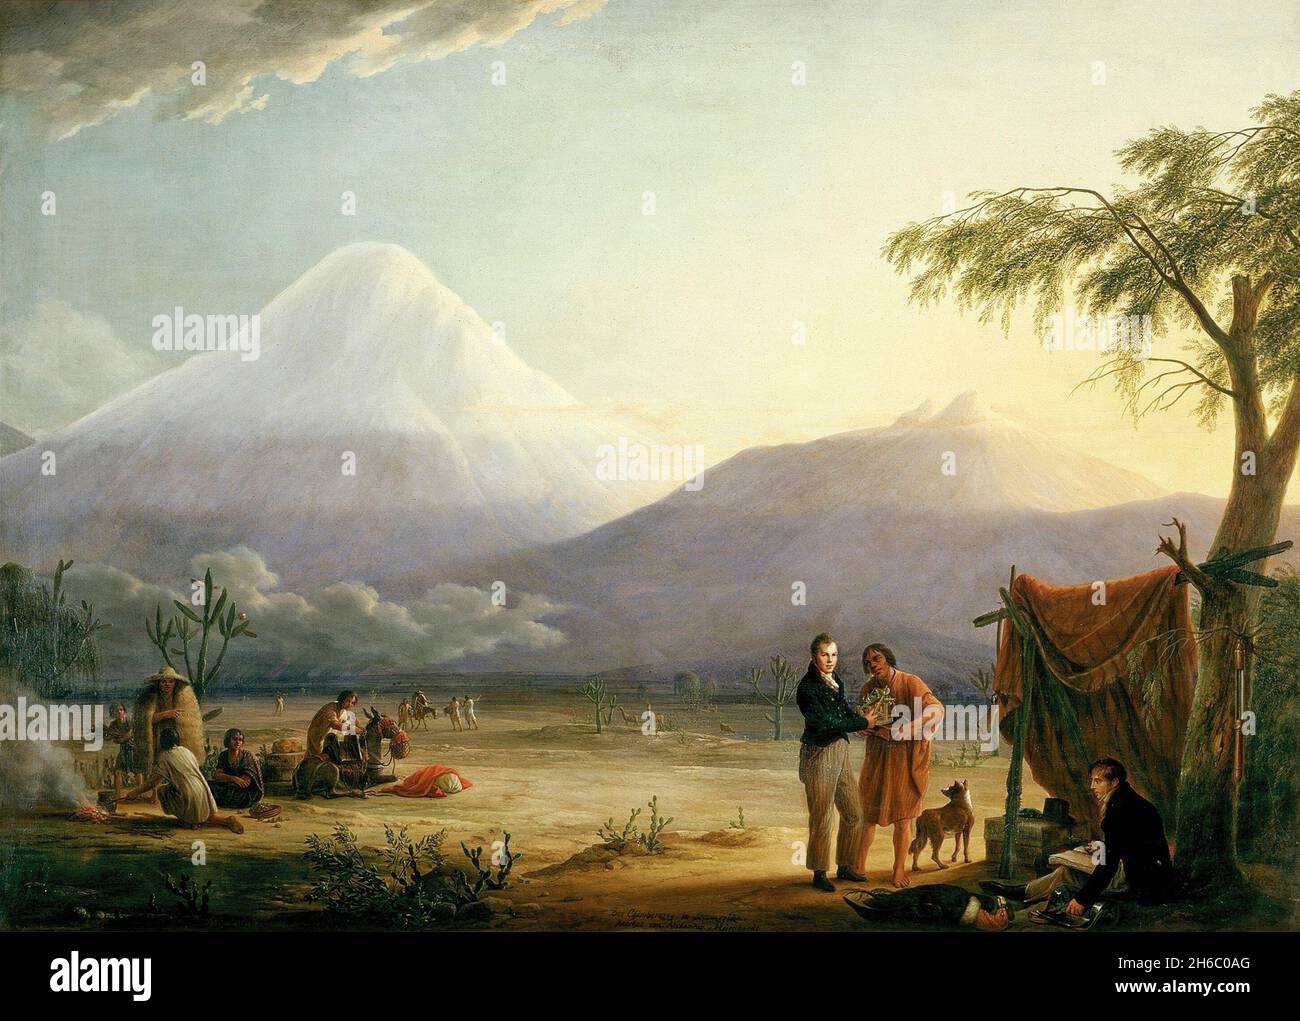 Ein Gemälde von Alexander von Humboldt und seiner Wissenschaftlerin Aimé Bonpland und dem Vulkan Chimborazo in Ecuador. Gemälde von Friedrich Georg Weitsch Stockfoto